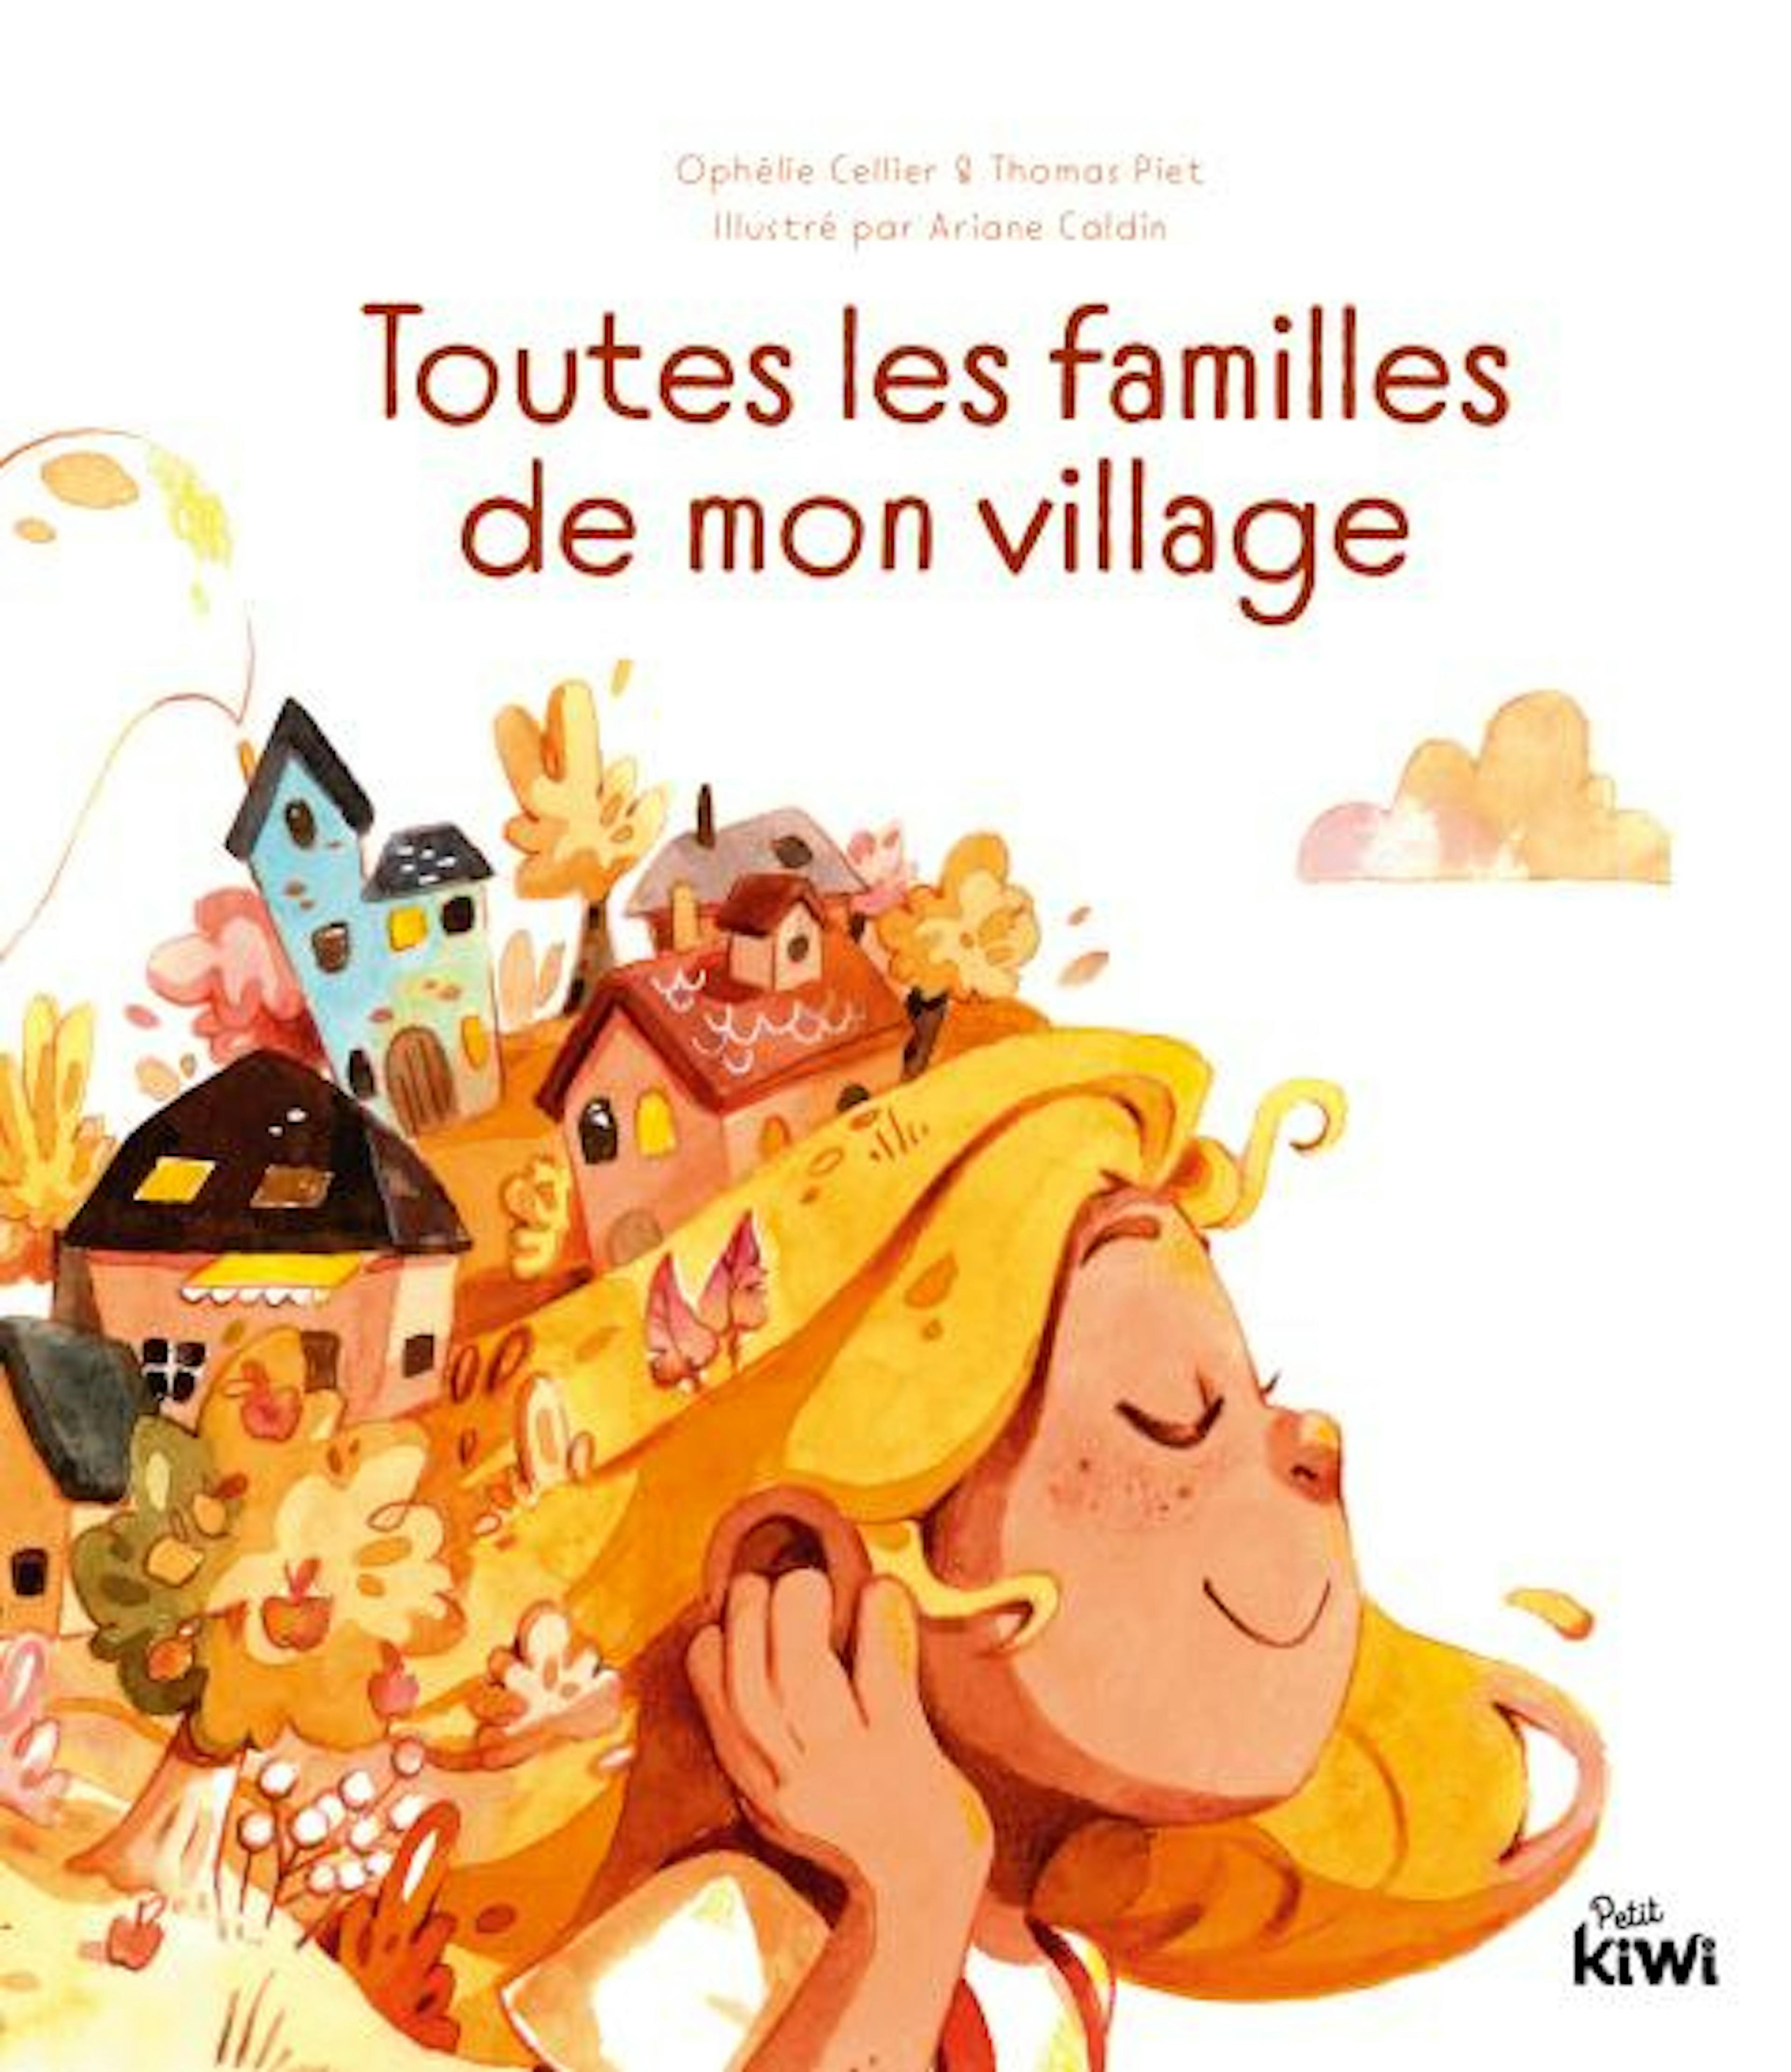 Couverture de Toutes les familles de mon village, d'Ophélie Célier, Thomas Piet et Ariane Caldin 